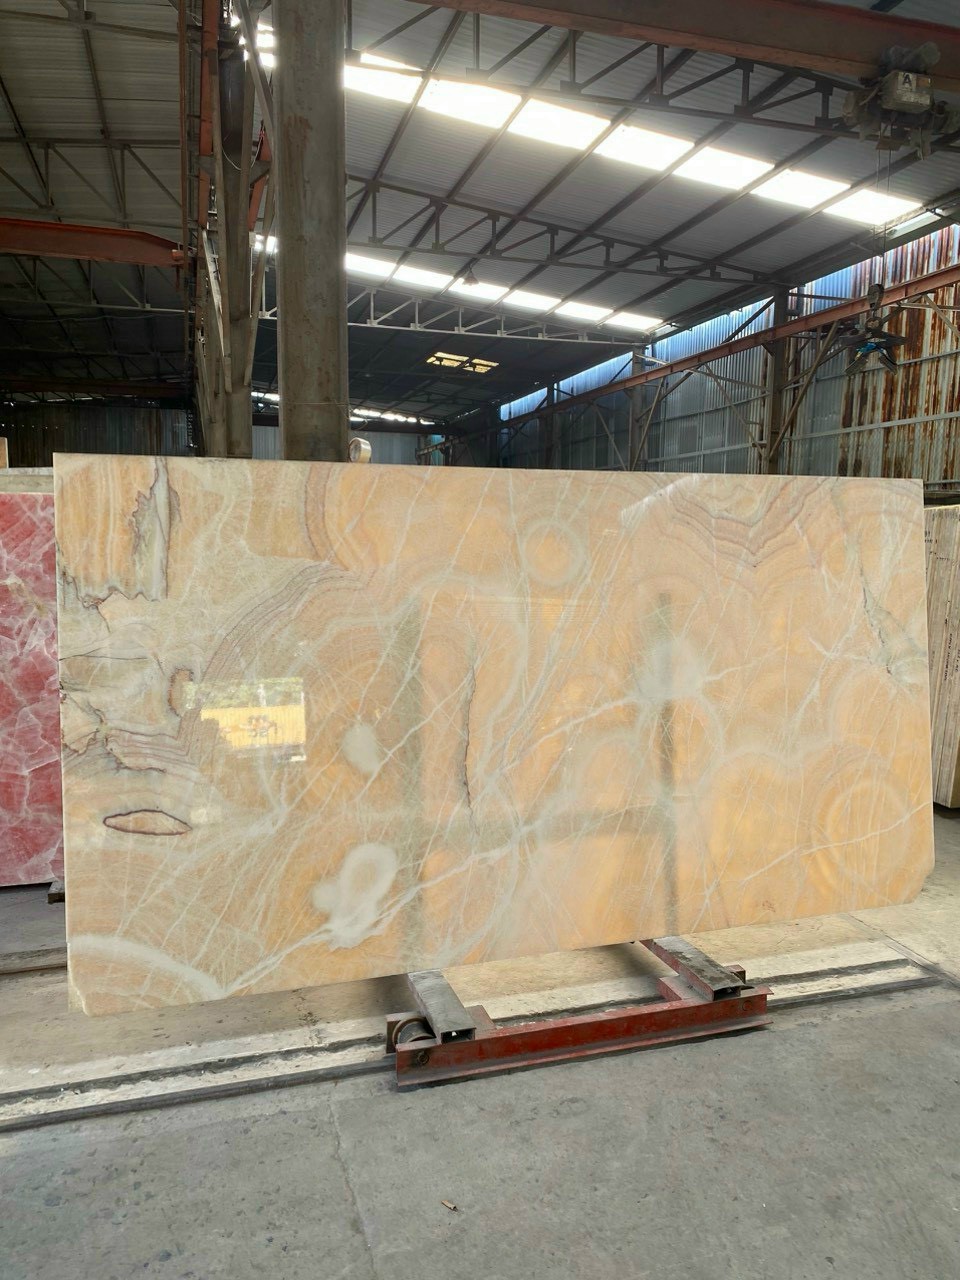 đá marble